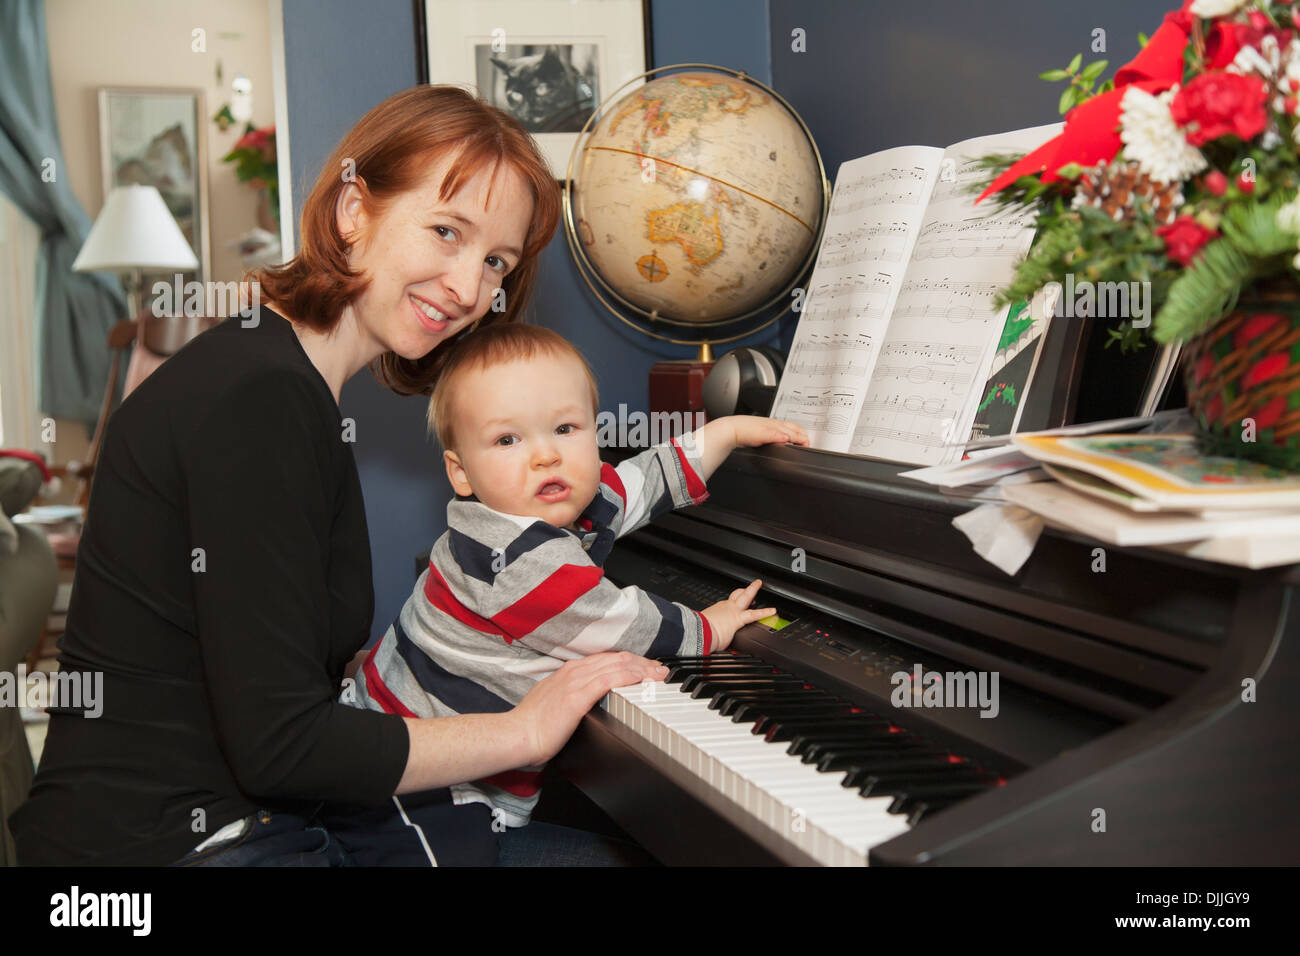 Un garçon de 15 mois est assis sur les genoux de sa mère alors qu'elle l'aide à jouer un piano électronique dans leur maison Banque D'Images